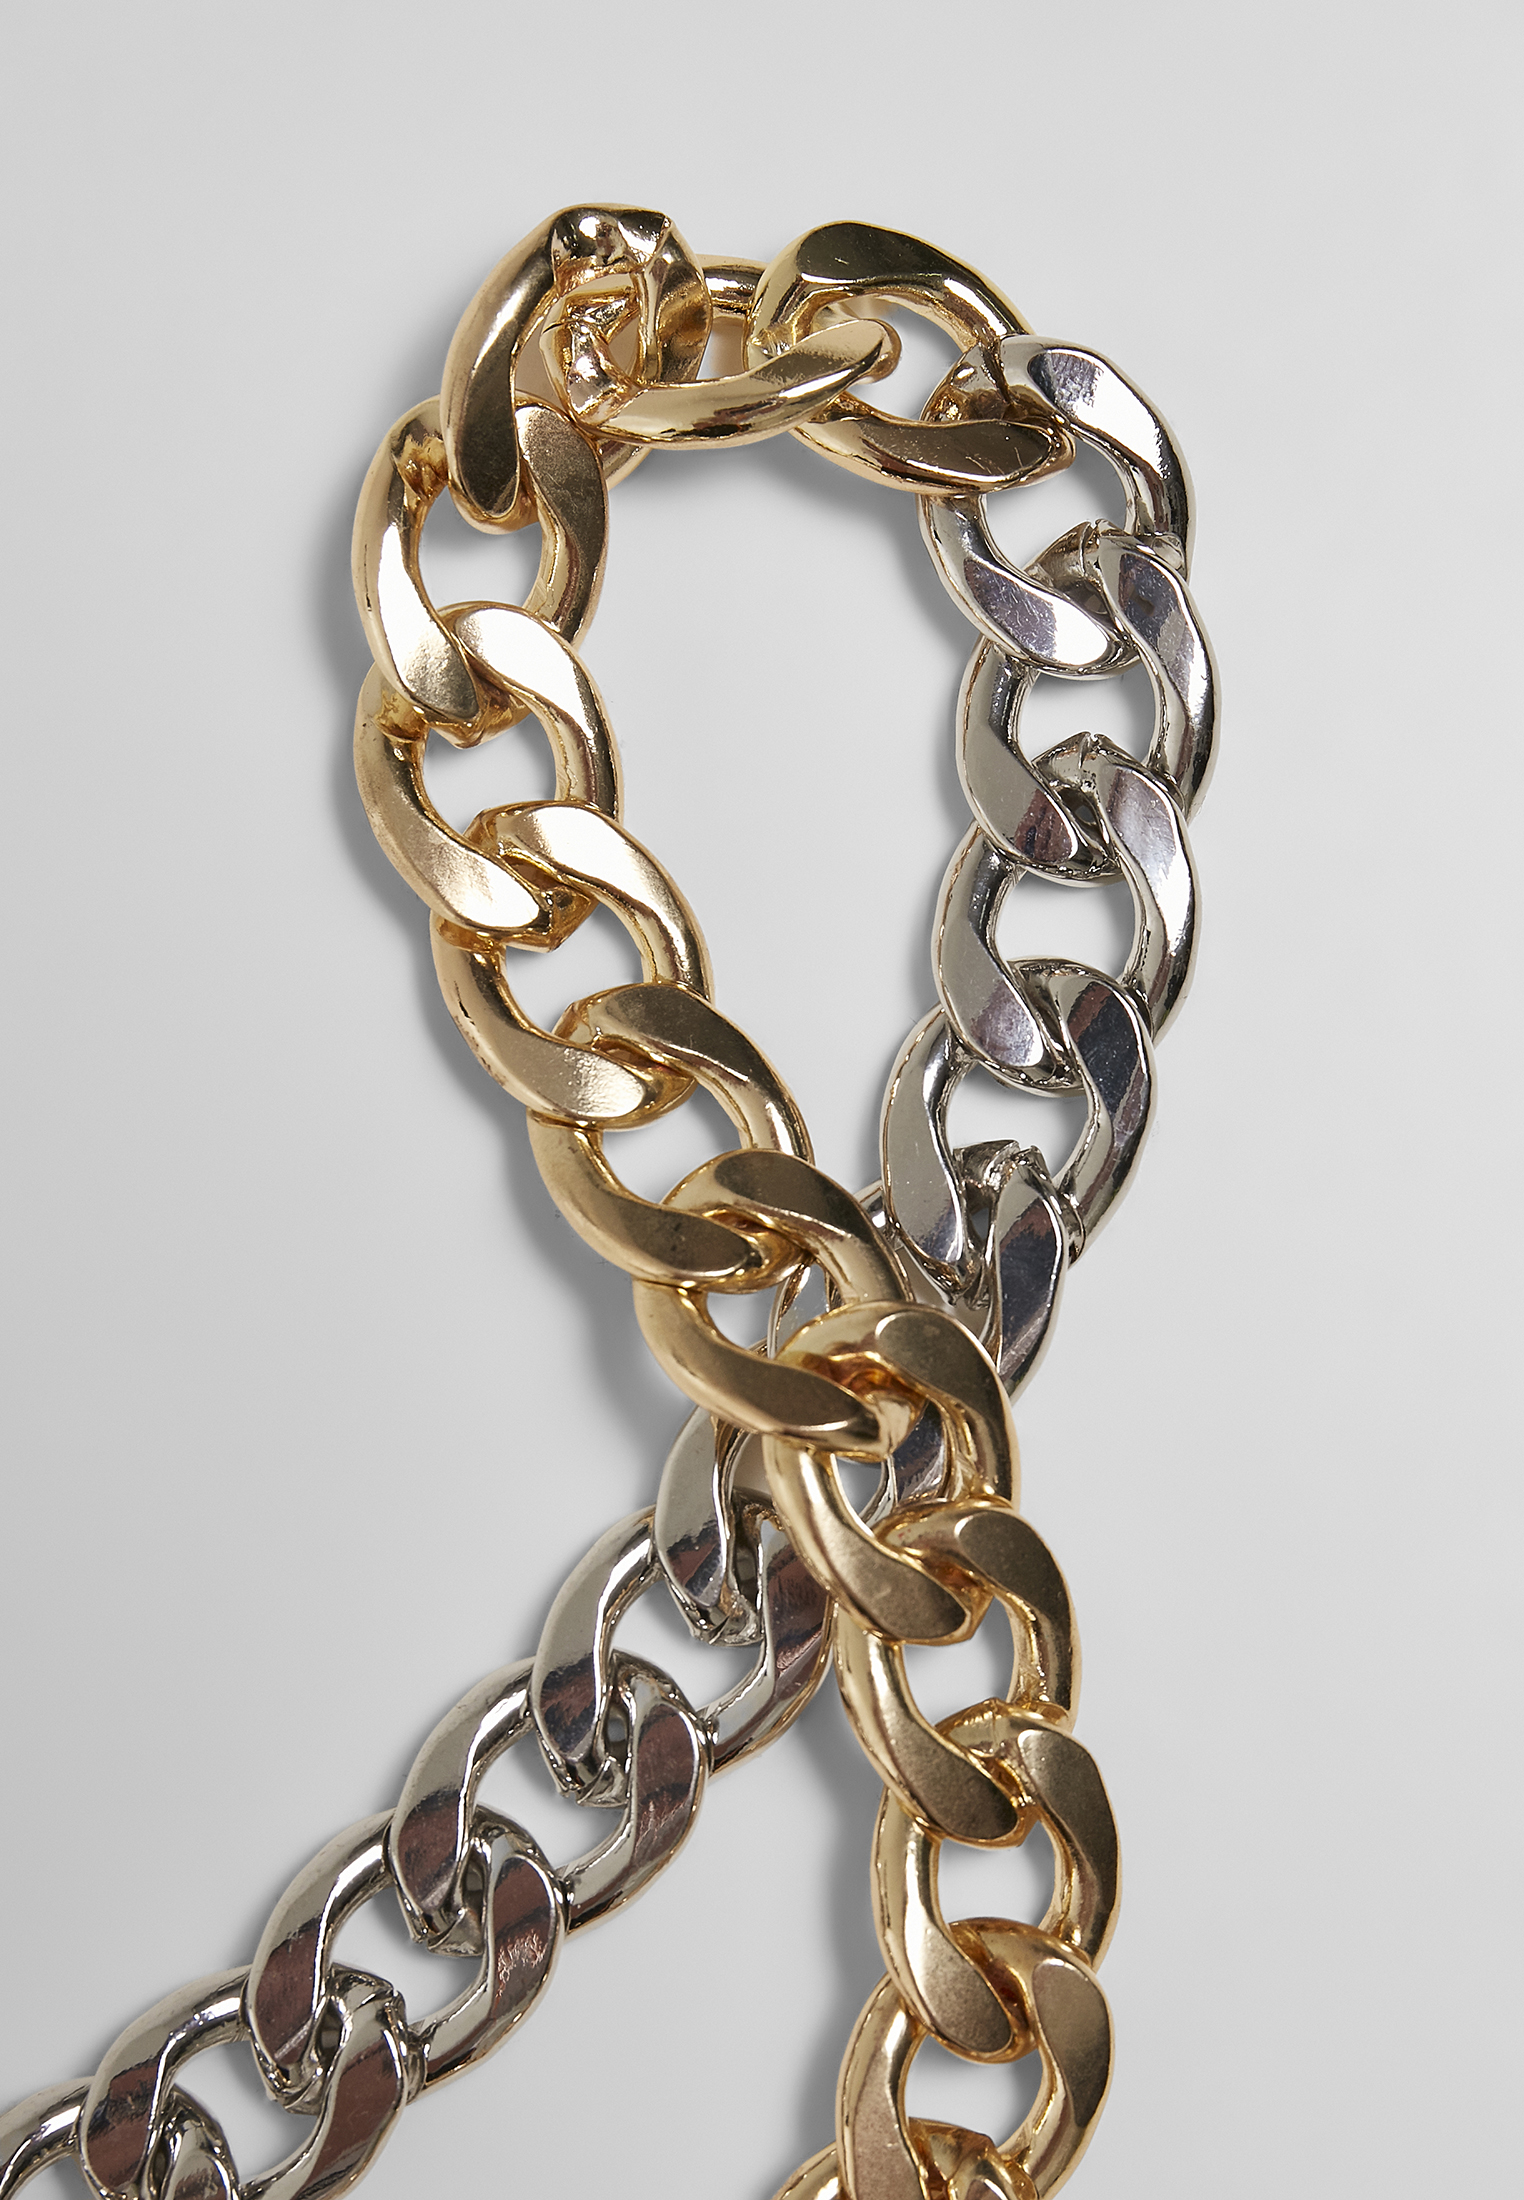 Schmuck Heavy Two-Tone Necklace in Farbe gold/silver